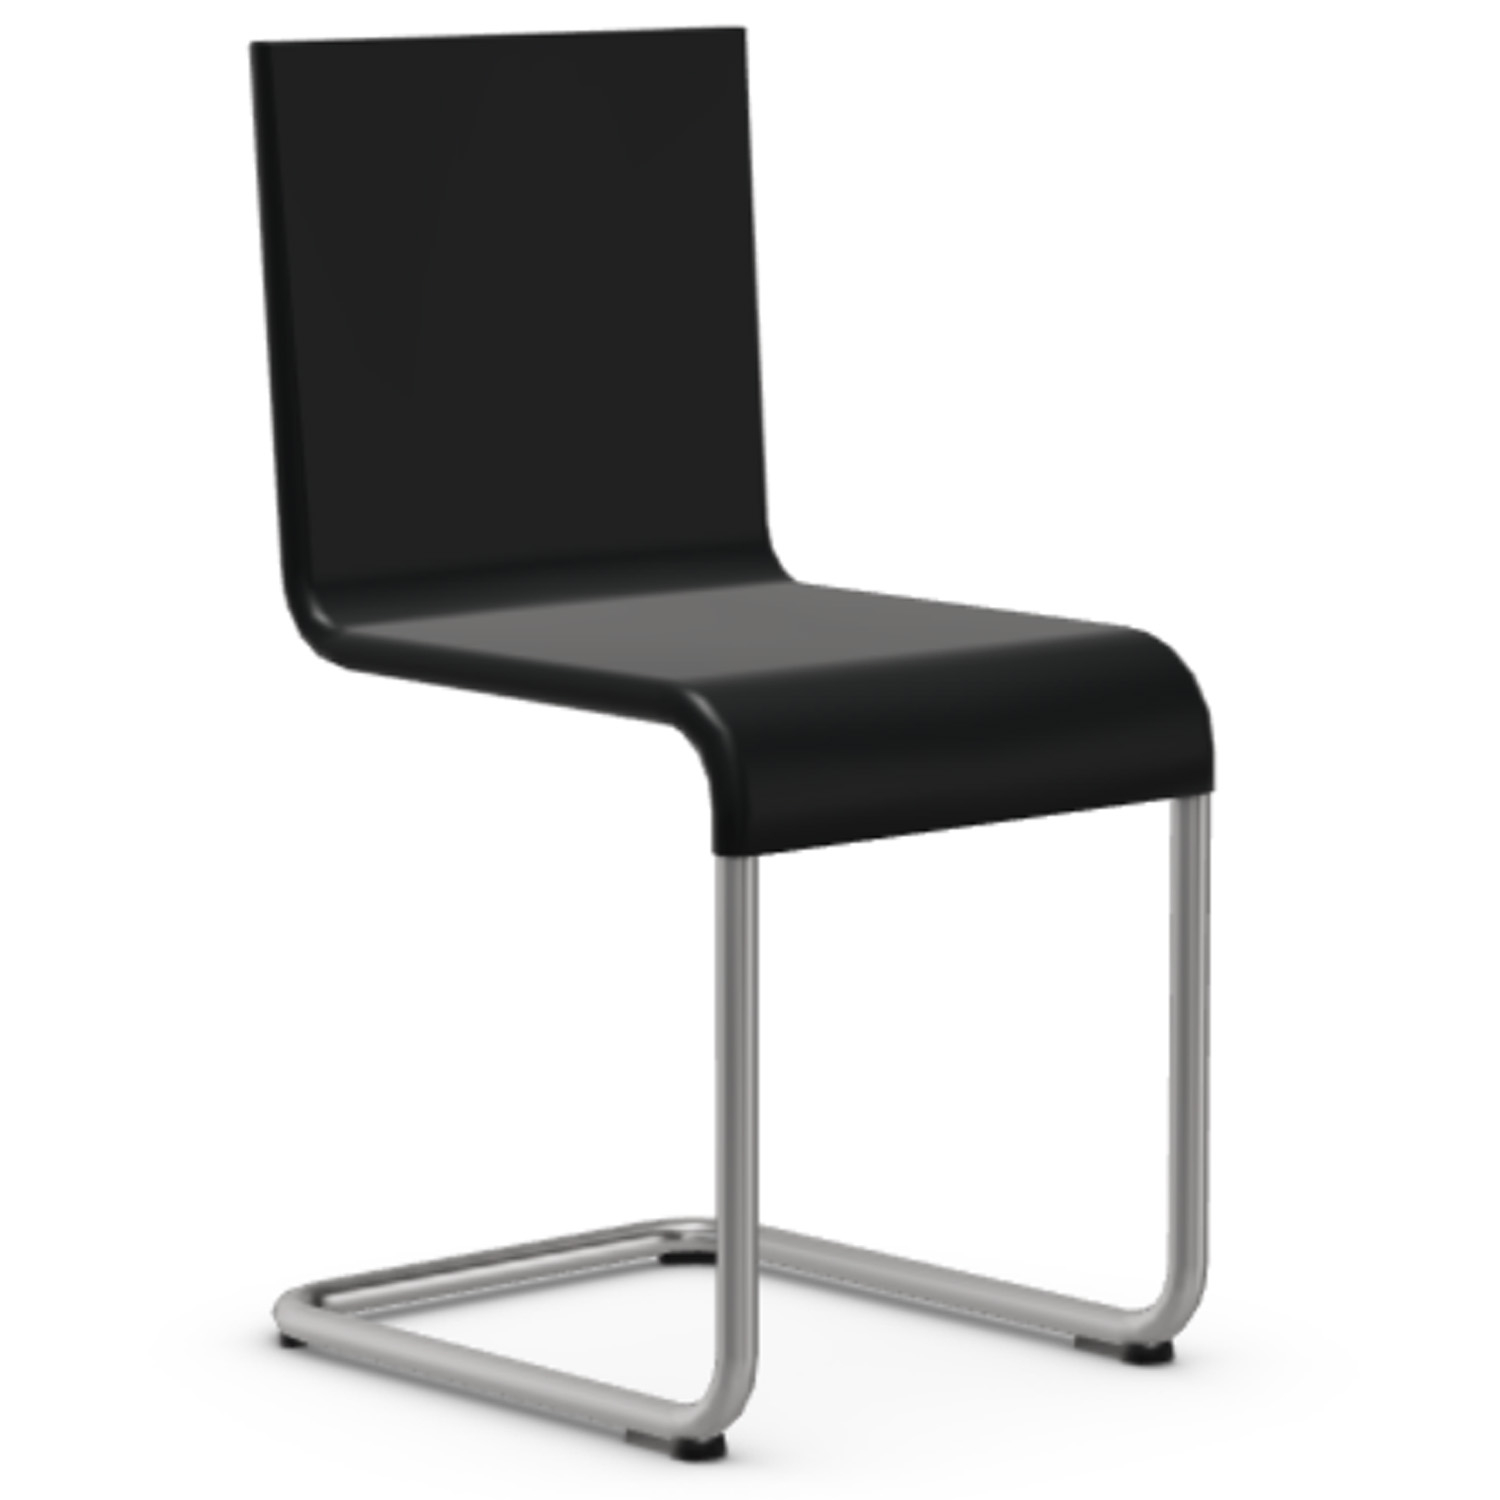 Vitra designové židle .05